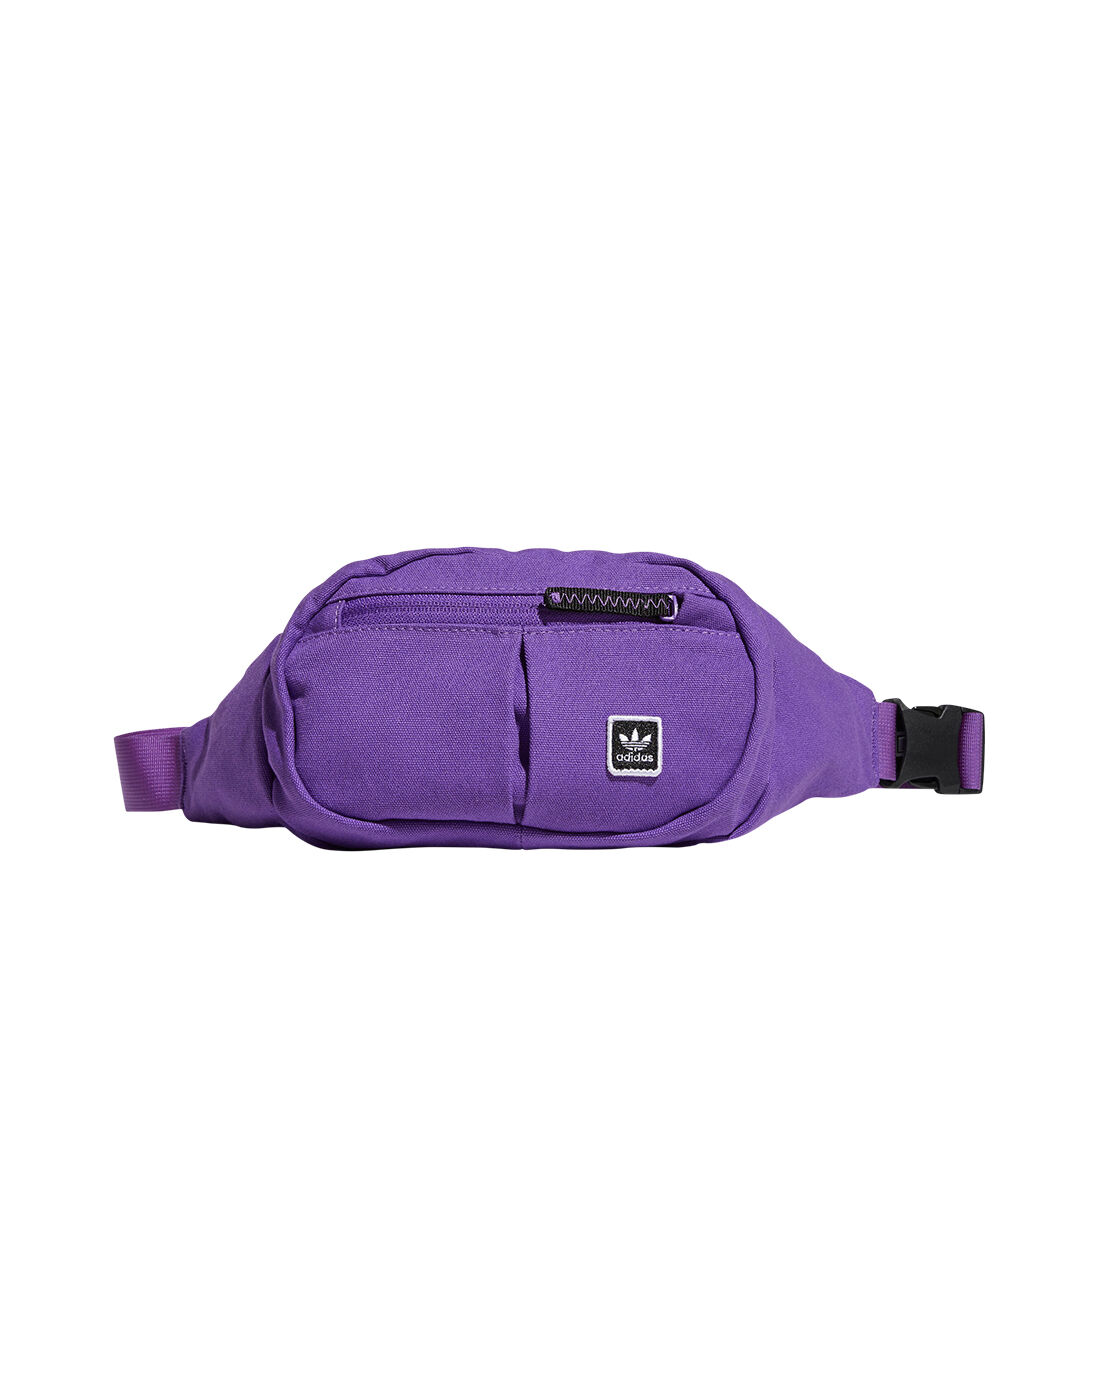 adidas waist bag purple